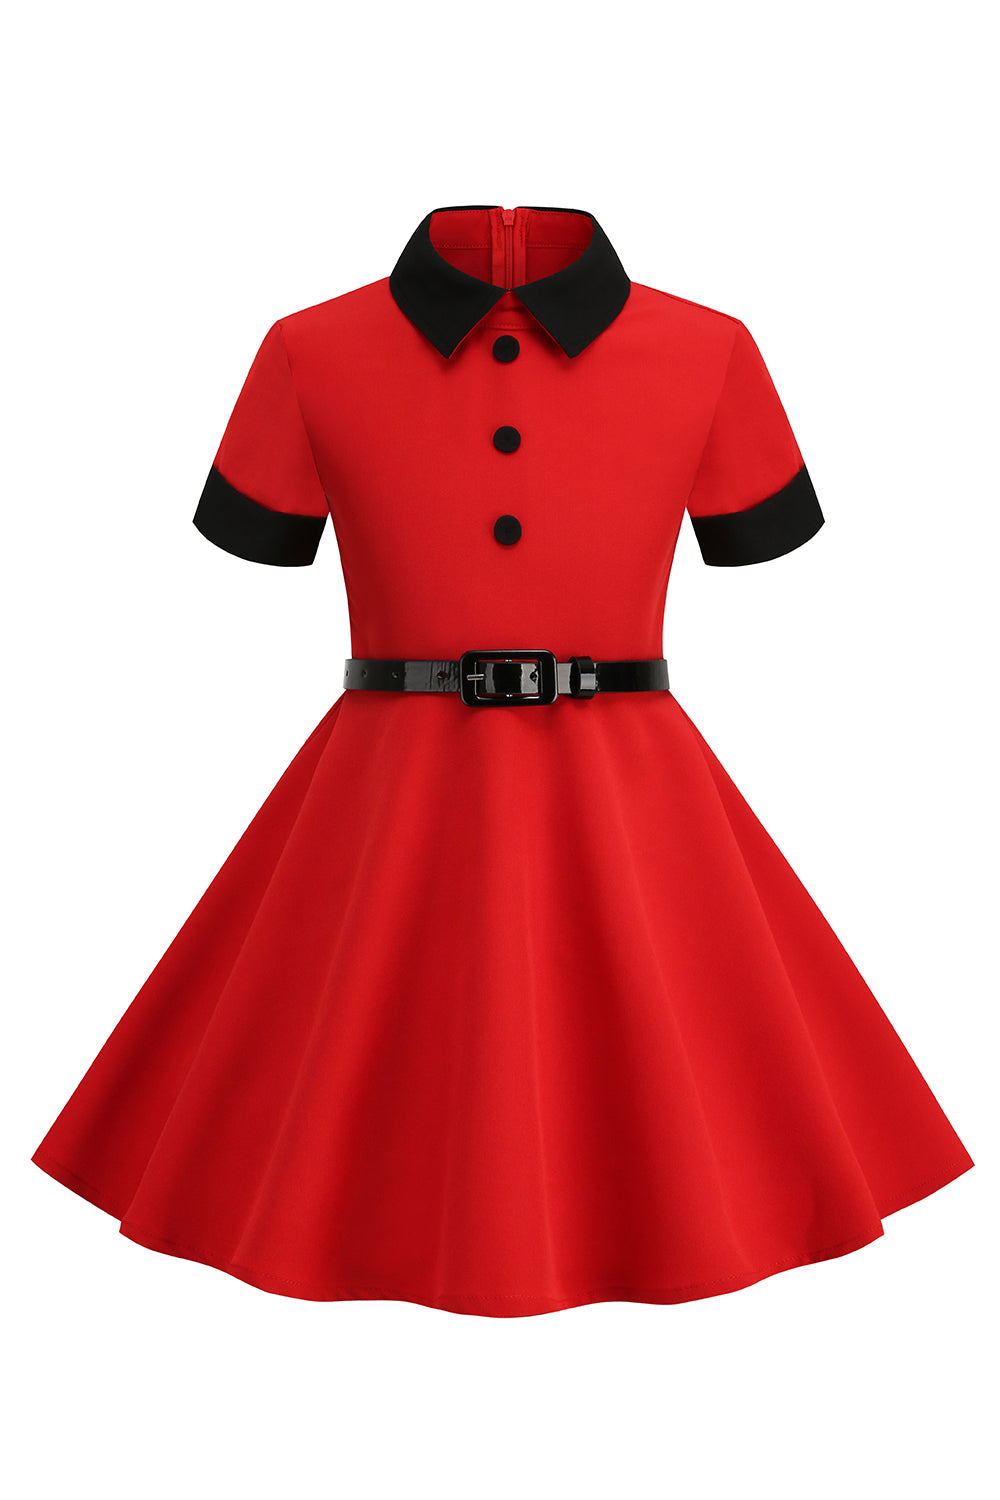 Roter Juwelenhals Vintage Mädchen Kleider